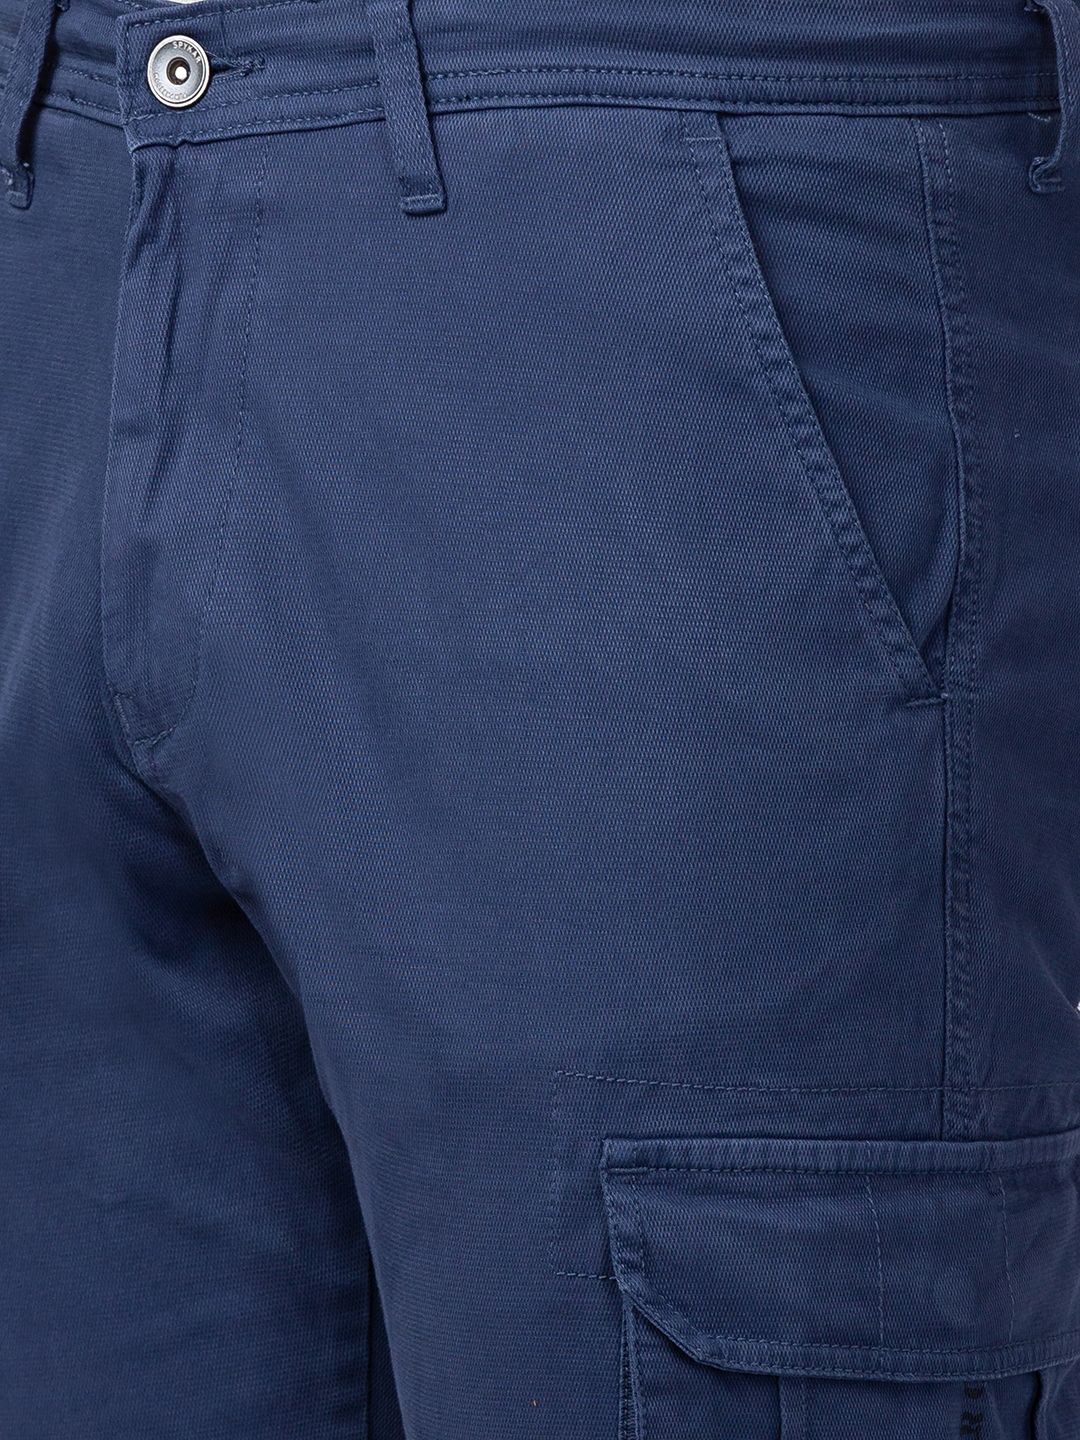 Spykar | Men's Blue Cotton Solid Trousers 4